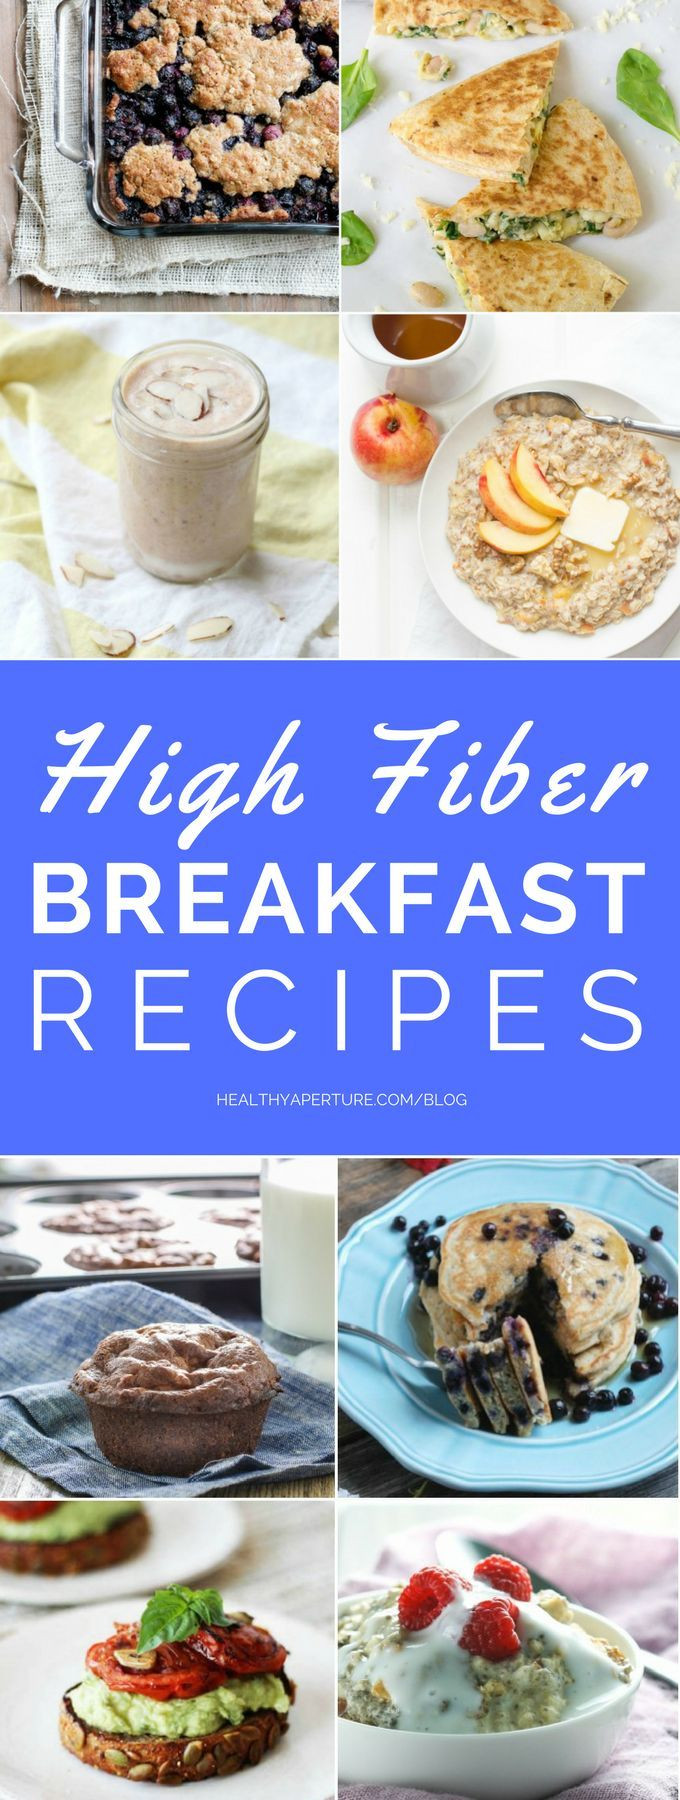 High Fiber Diets Recipes
 Best 25 High fiber foods ideas on Pinterest